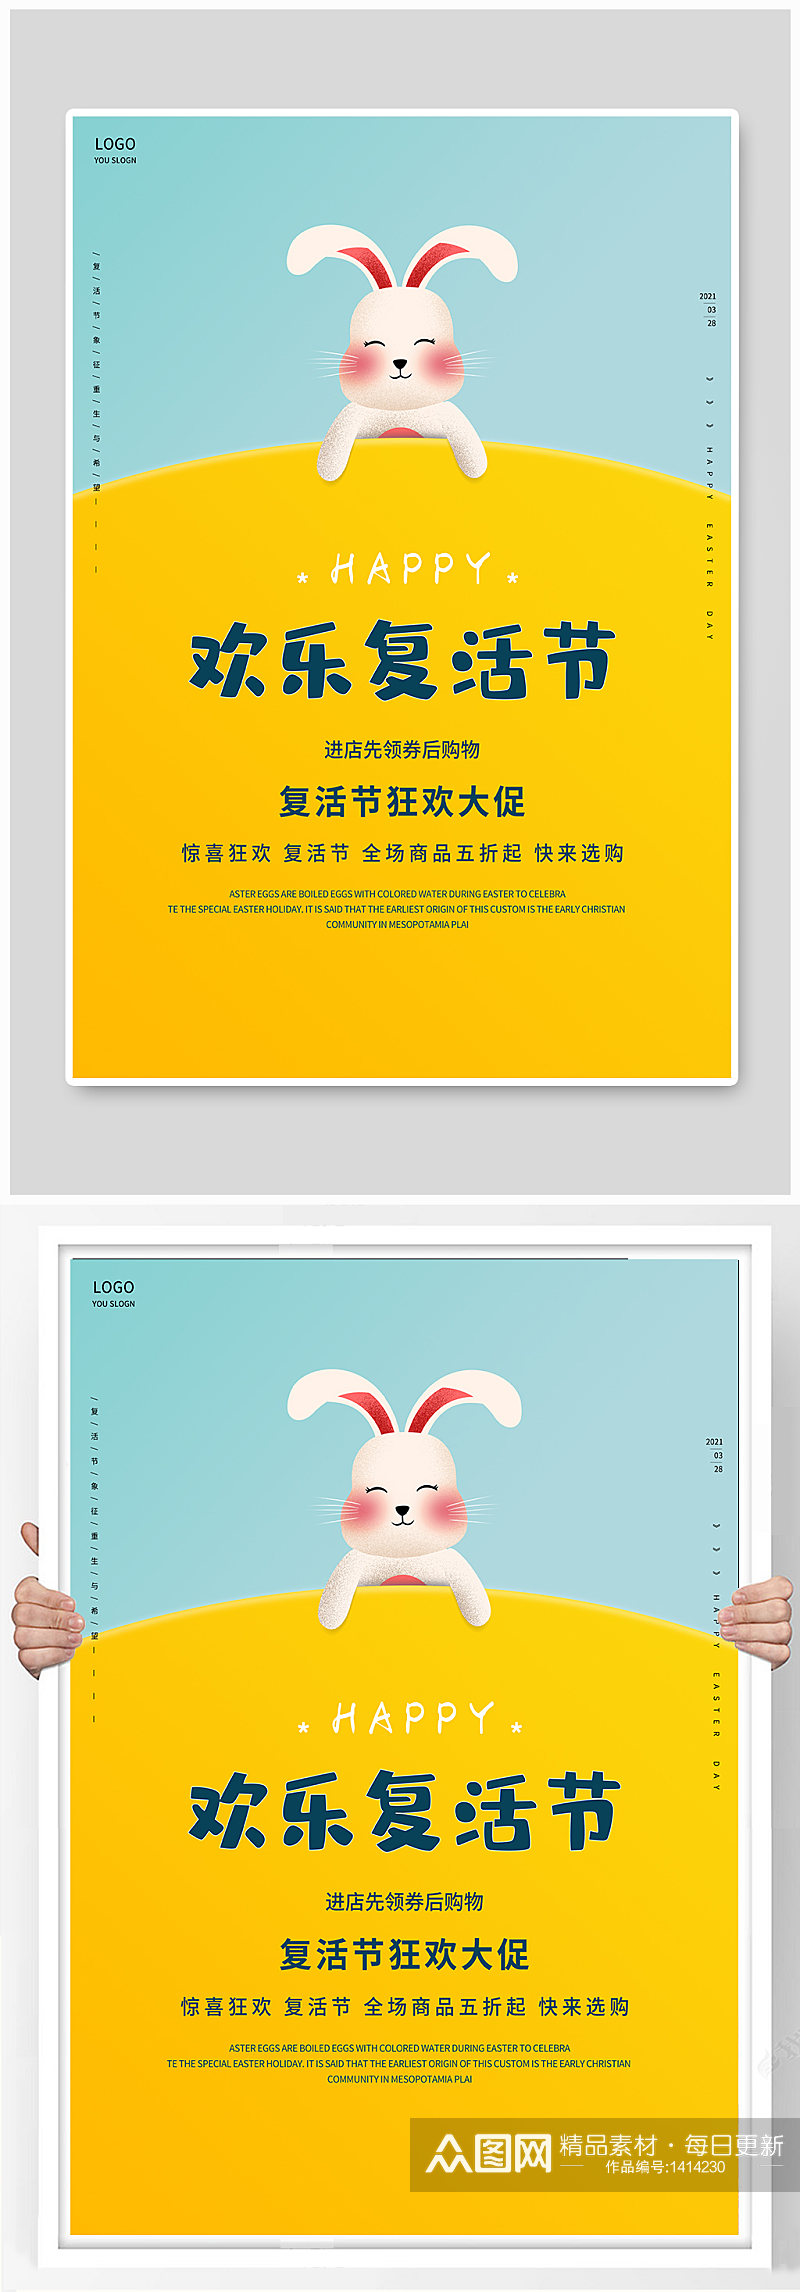 简约风可爱兔子复活节快乐促销宣传海报素材